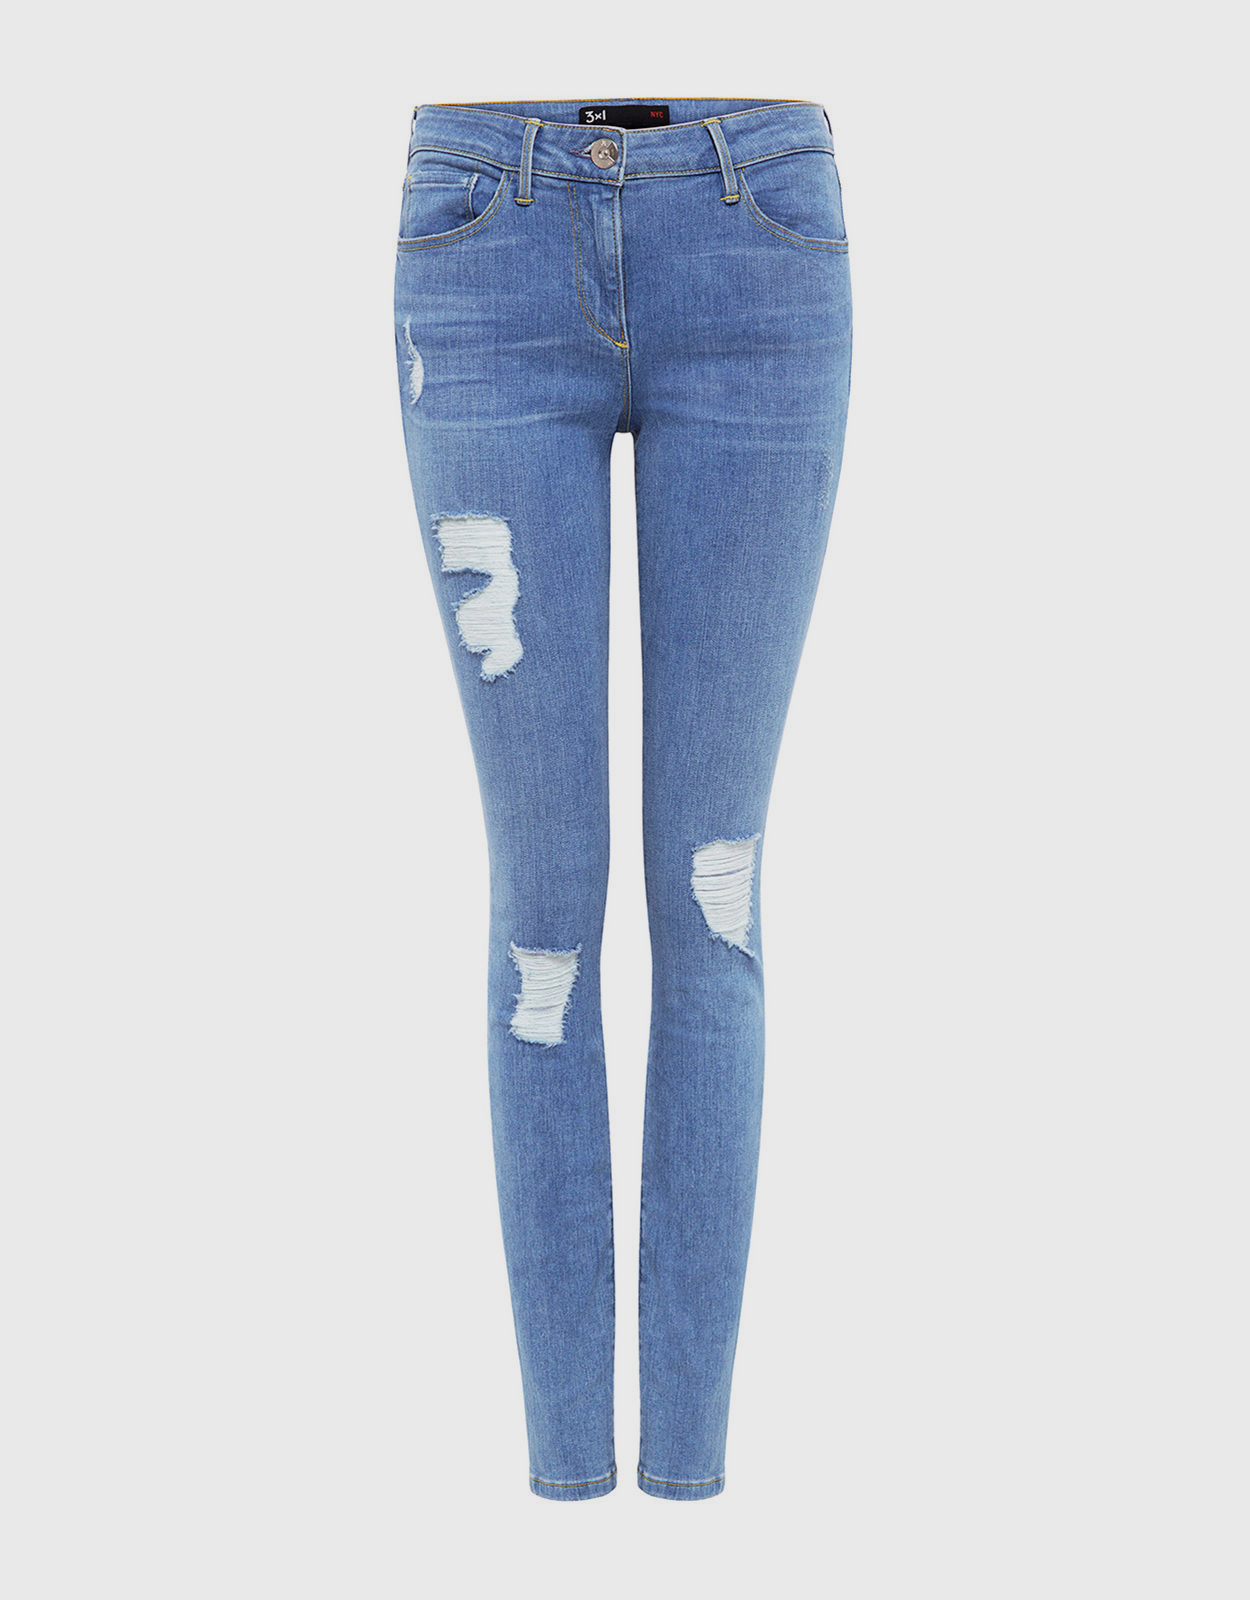 3x1 Mid Skinny Jeans (Jeans,Skinny Leg) IFCHIC.COM